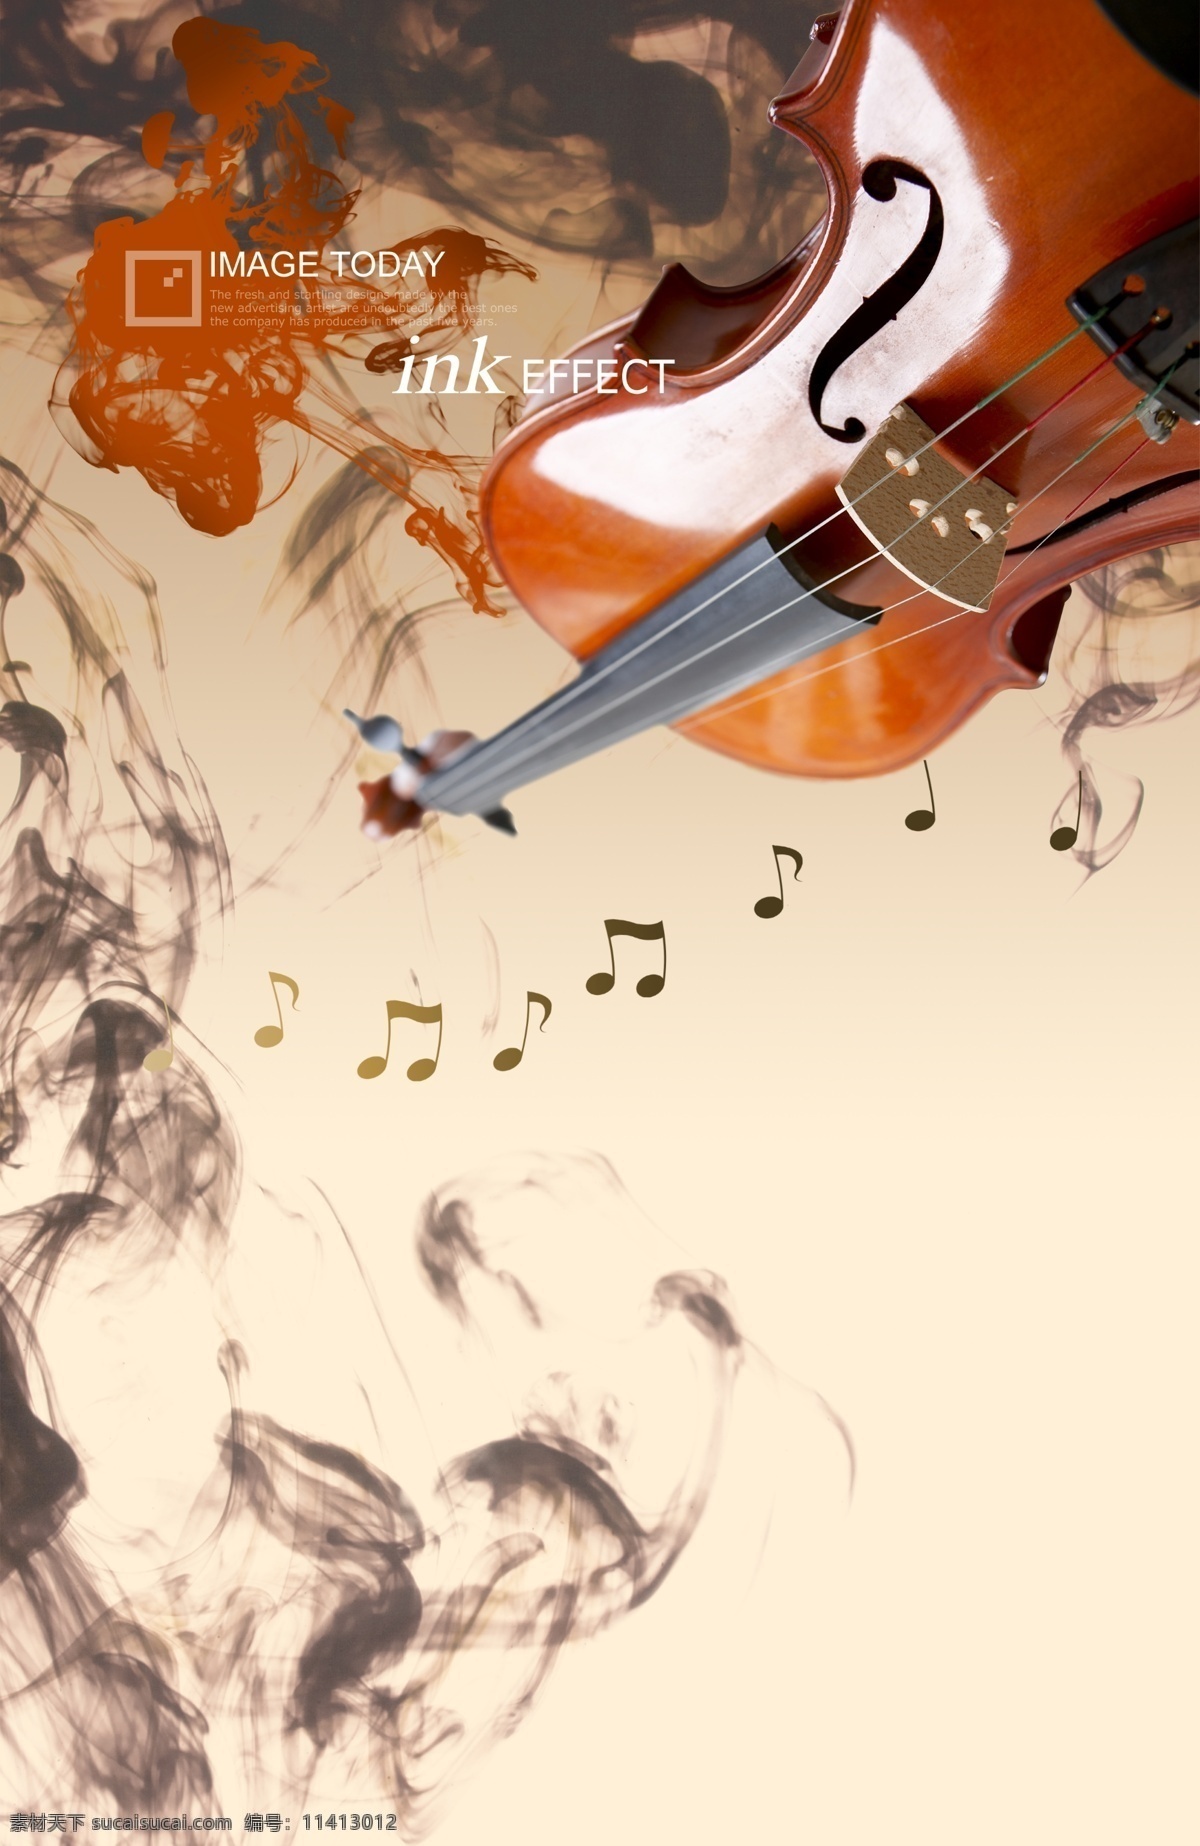 时尚小提琴 时尚 时尚元素 烟雾 梦幻 炫彩 音符 小提琴 音乐 乐器 广告设计模板 psd素材 白色